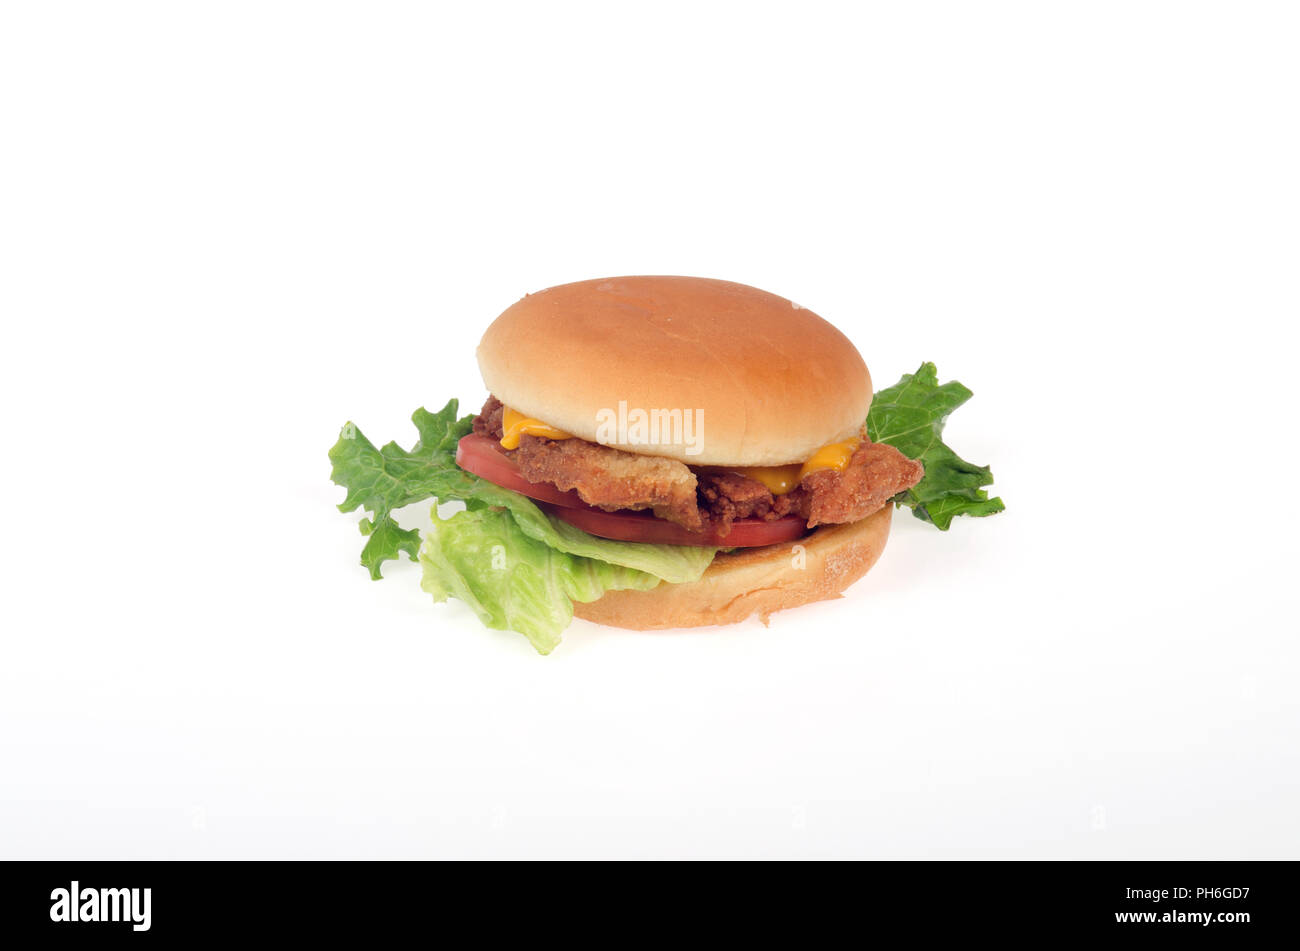 Fil - ein Hähnchen filet Sandwich mit Salat, Tomaten und gelben Käse in einer Rolle oder Brötchen auf weißem Hintergrund Stockfoto